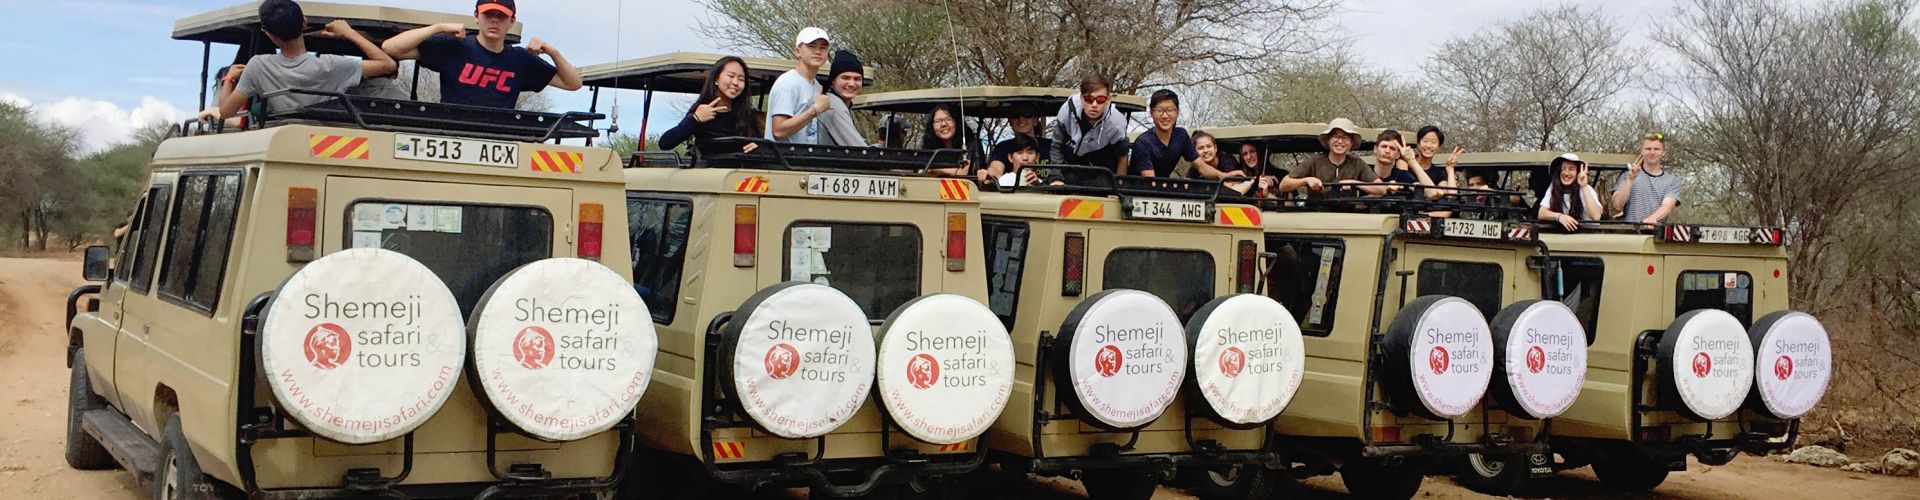 5 camiones de Shemeji Safari juntos en el monte